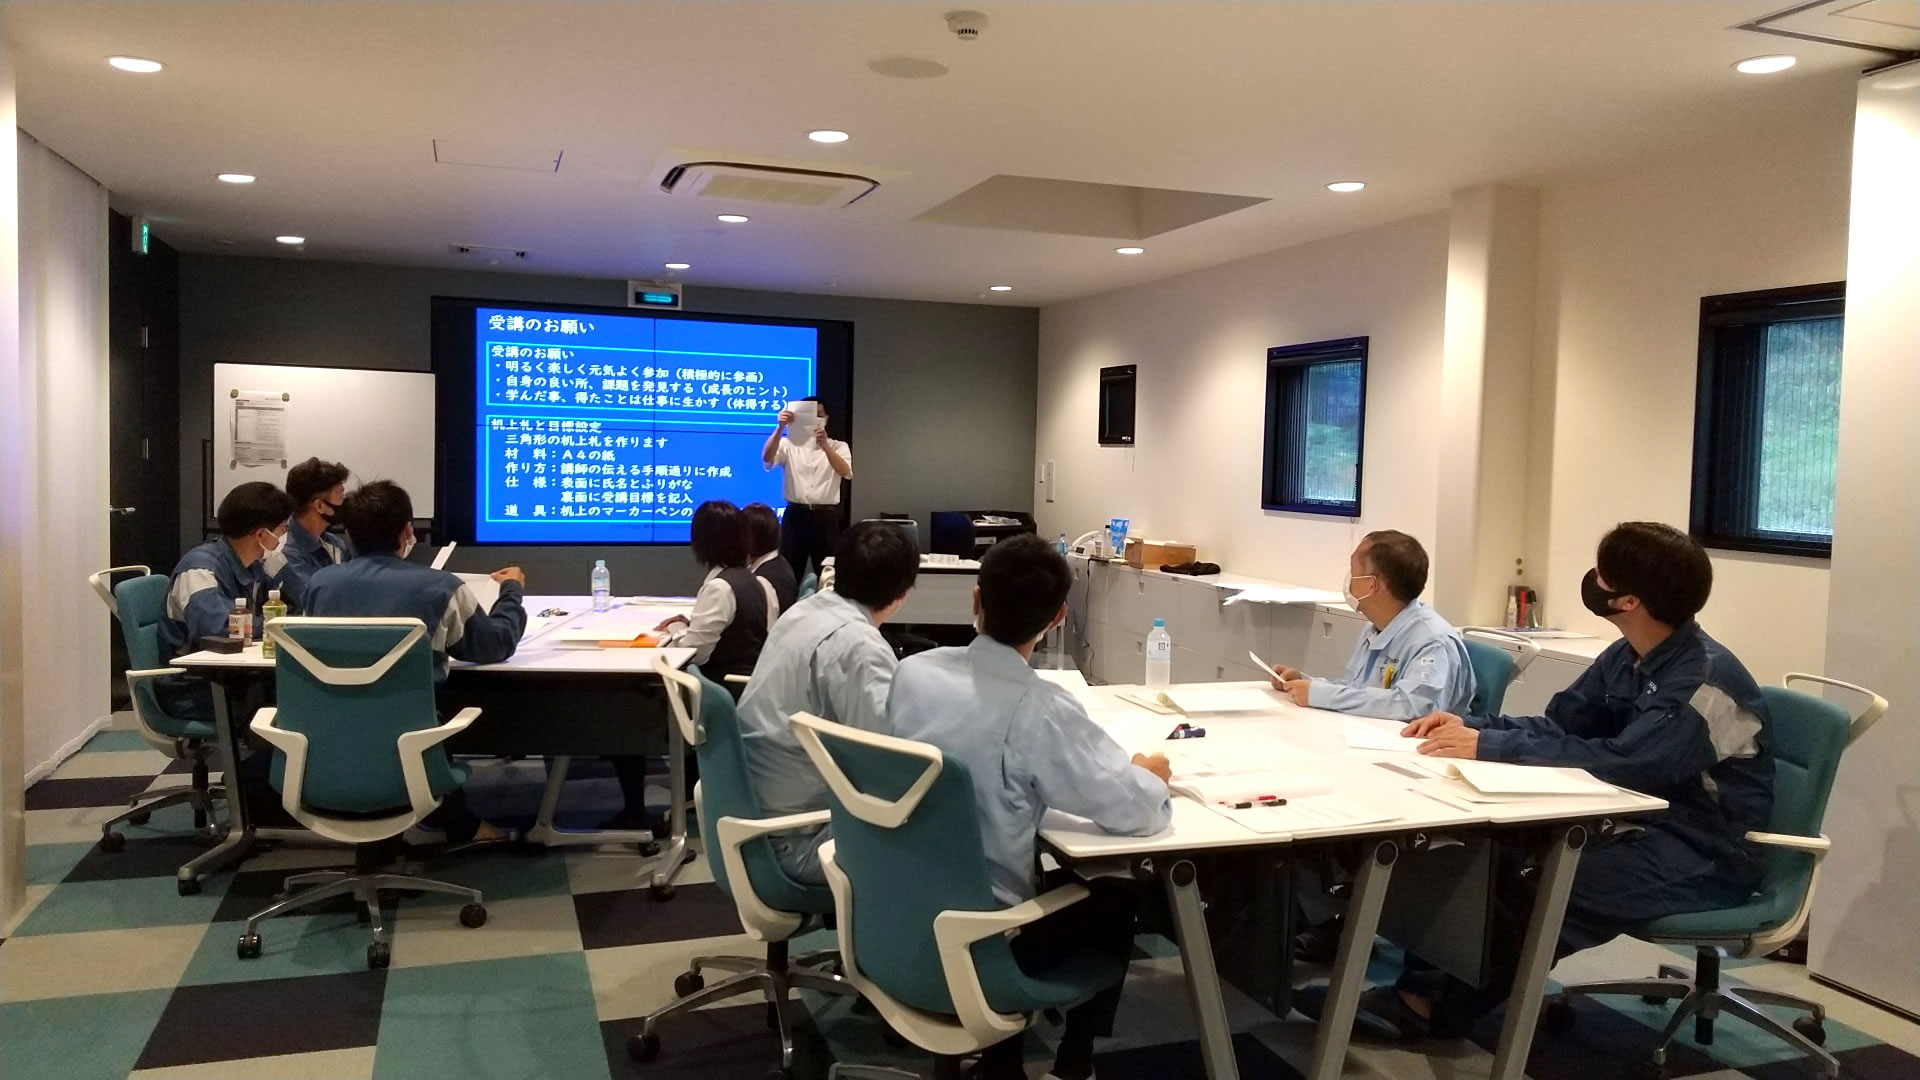 講習室に9名の社員が2つのテーブルに分かれて座っていて講師が前に立って電子黒板を使って救命講習をしている